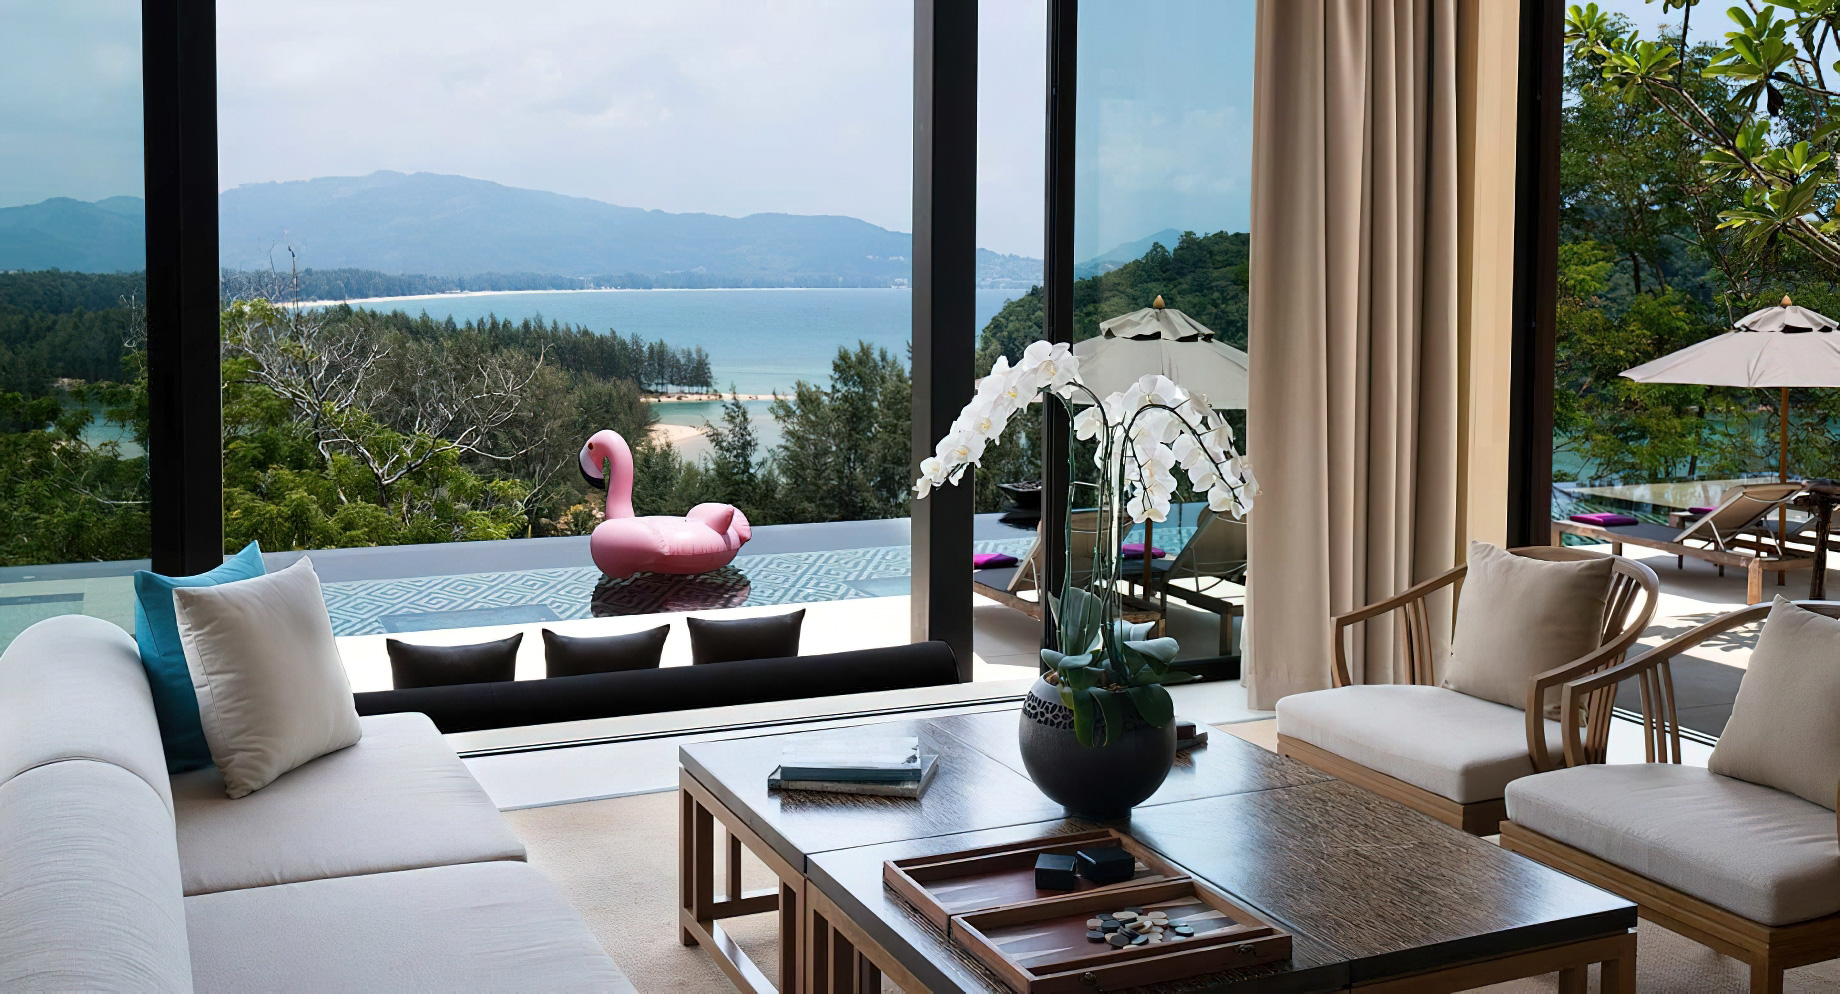 Anantara Layan Phuket Resort & Residences – Thailand – Residence Living Room View